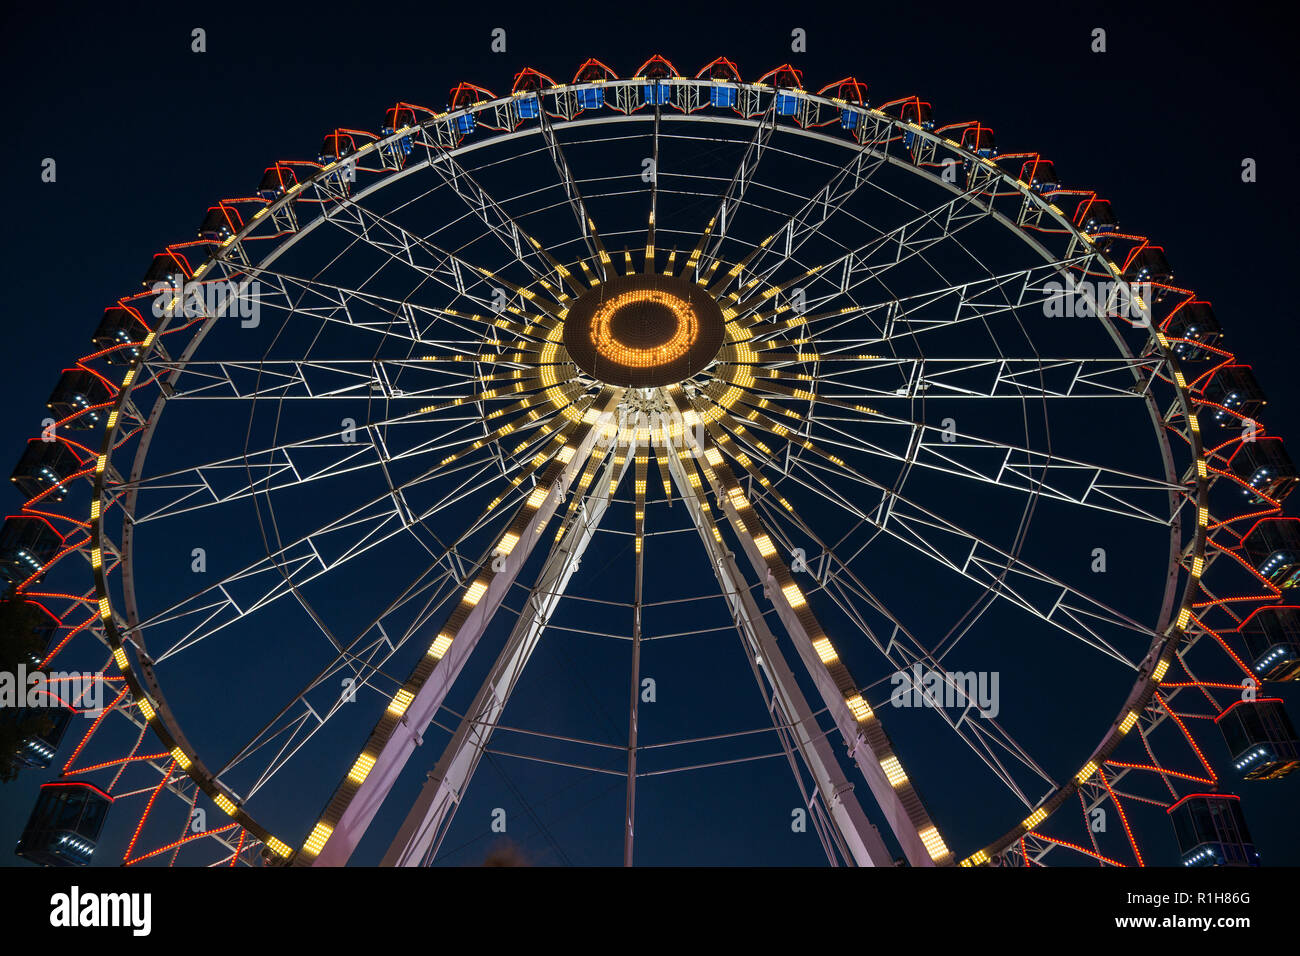 Ferris wheel, Volksfest Cannstatter Wasen 2018, night scene, Bad Cannstatt, Stuttgart, Baden-Württemberg, Germany Stock Photo